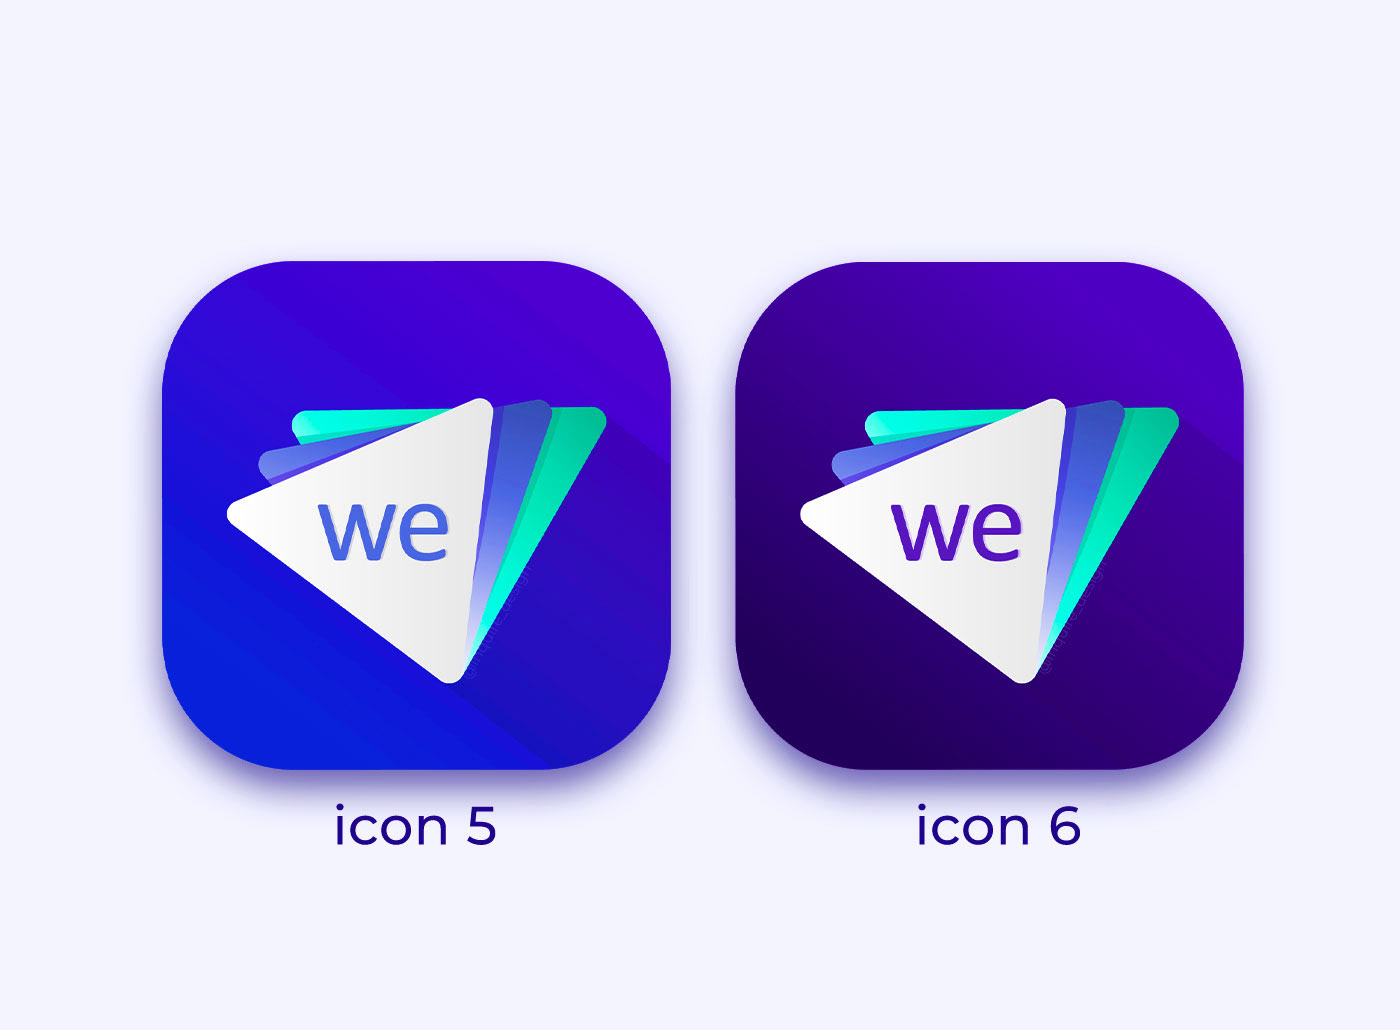 app icon Icon ios mobile android desktop windows иконки android icon iOS icon 行動應用程式圖標 모바일 앱 아이콘 иконки на рабочий стол иконки телефона иконки айфона иконка виндовс иконки для приложений логотипы приложений